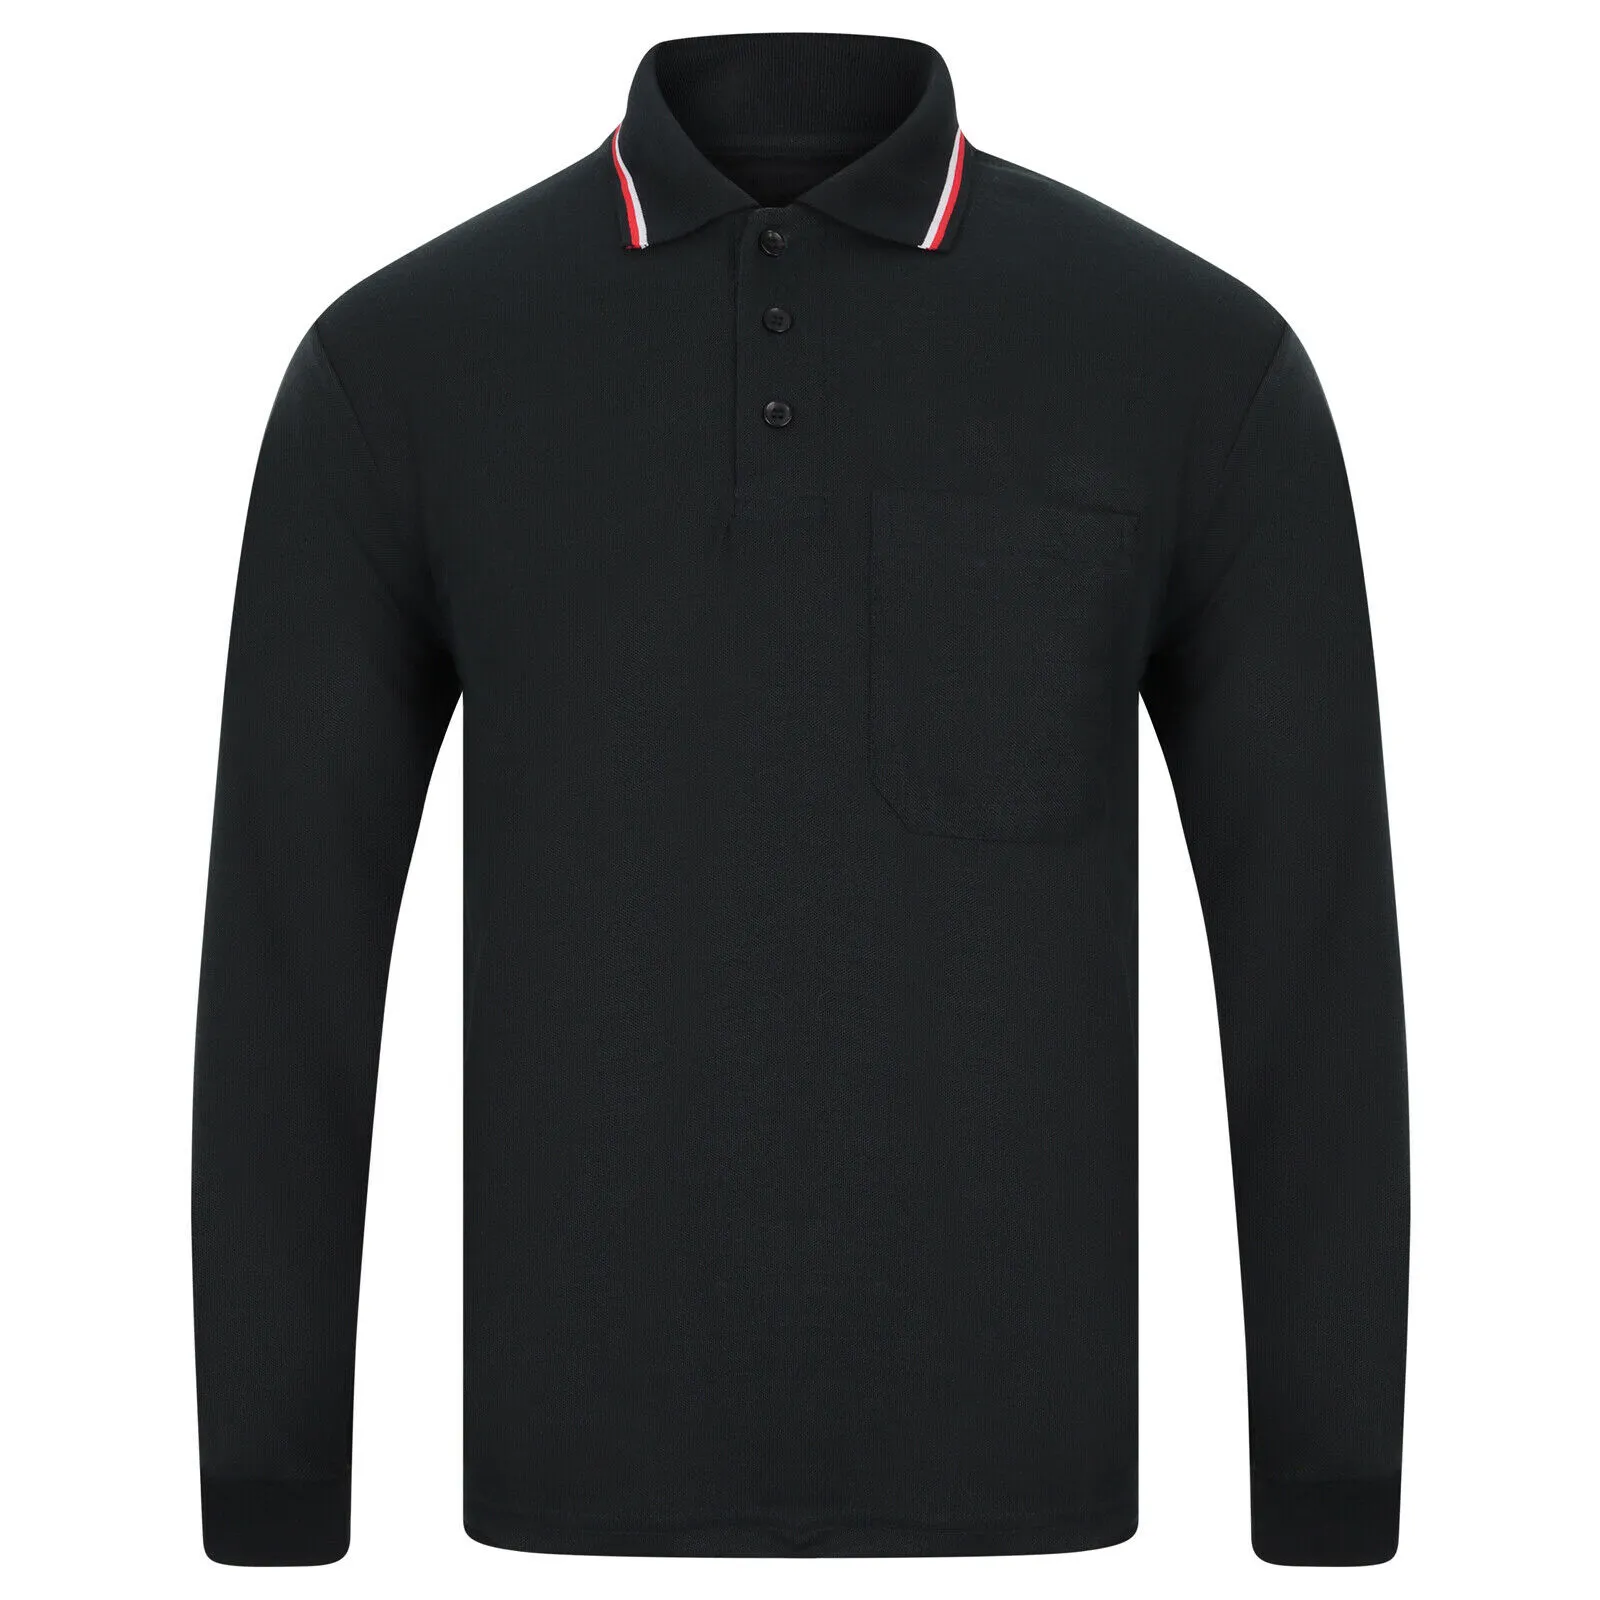 Nuova POLO da uomo TOP a manica lunga PIQUE Polo da Golf Custom design camicie slim Fit vendita